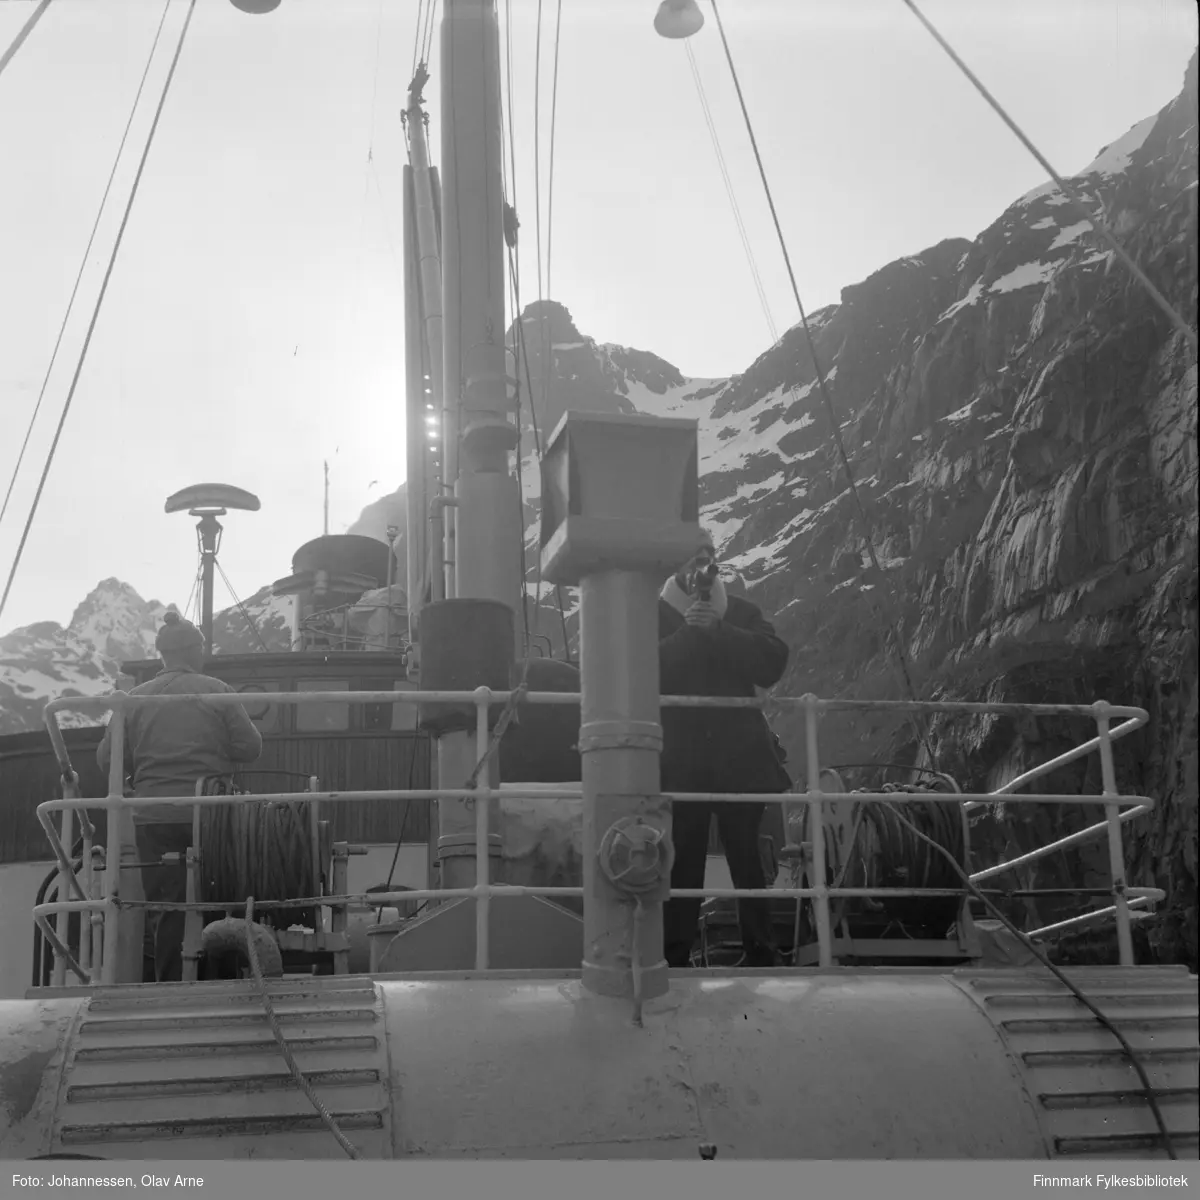 Ombord i DS "Lofoten" som var i hurtigrutefart for Vesteraalske fra 1931 til 1964. Bildet er tatt i Trollfjorden i Nordland.

Mannen til høyre holder på et film kamera og man kan se fjell i bakgrunnen.